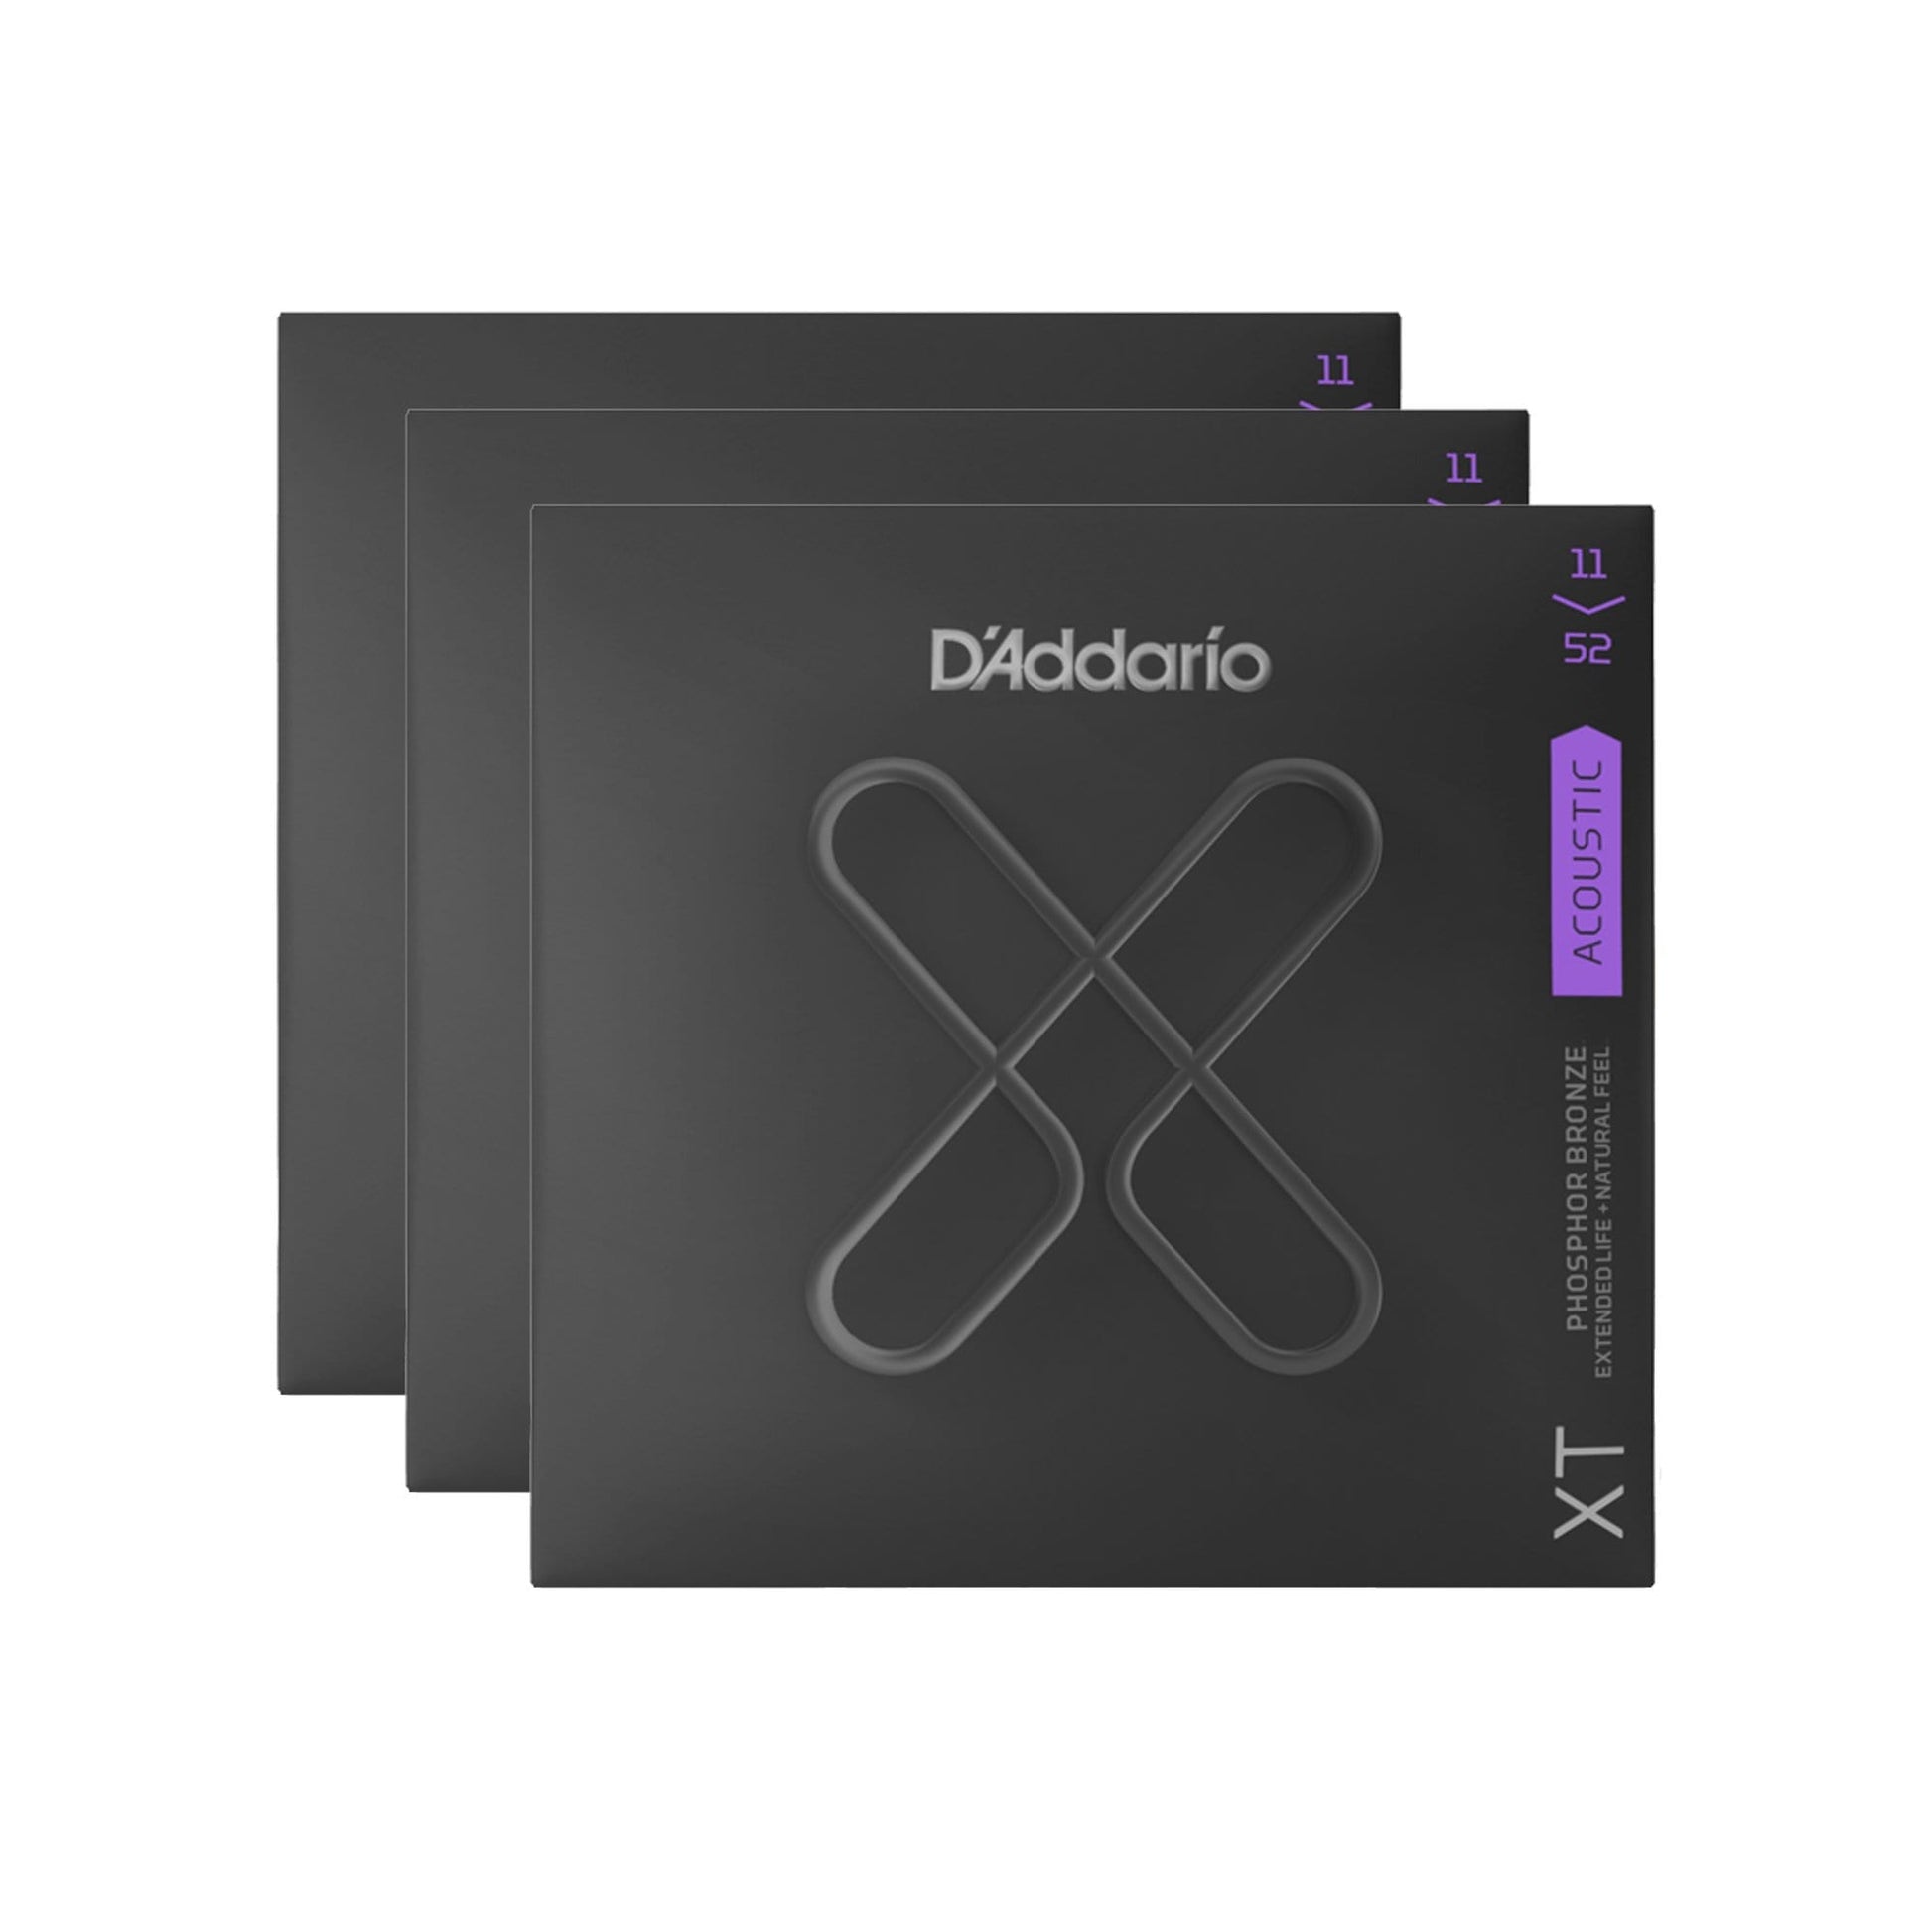 D'Addario XT Phosphor Bronze Acoustic Guitar Strings Custom Light 11-52 3 Pack Bundle Accessories / Strings / Guitar Strings